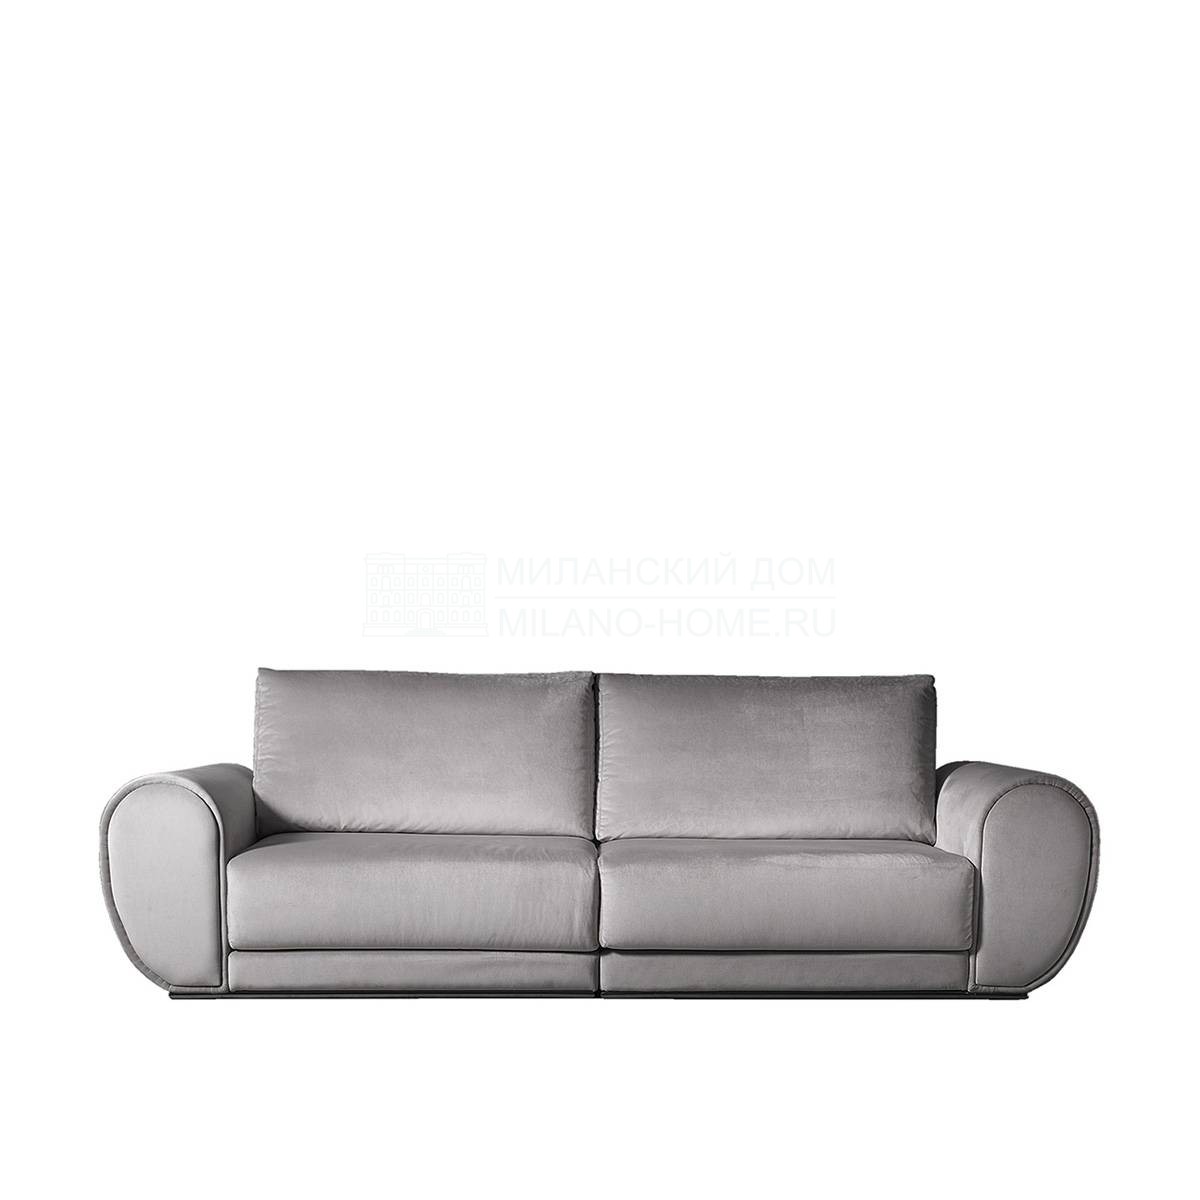 Прямой диван Clara sofa из Испании фабрики COLECCION ALEXANDRA